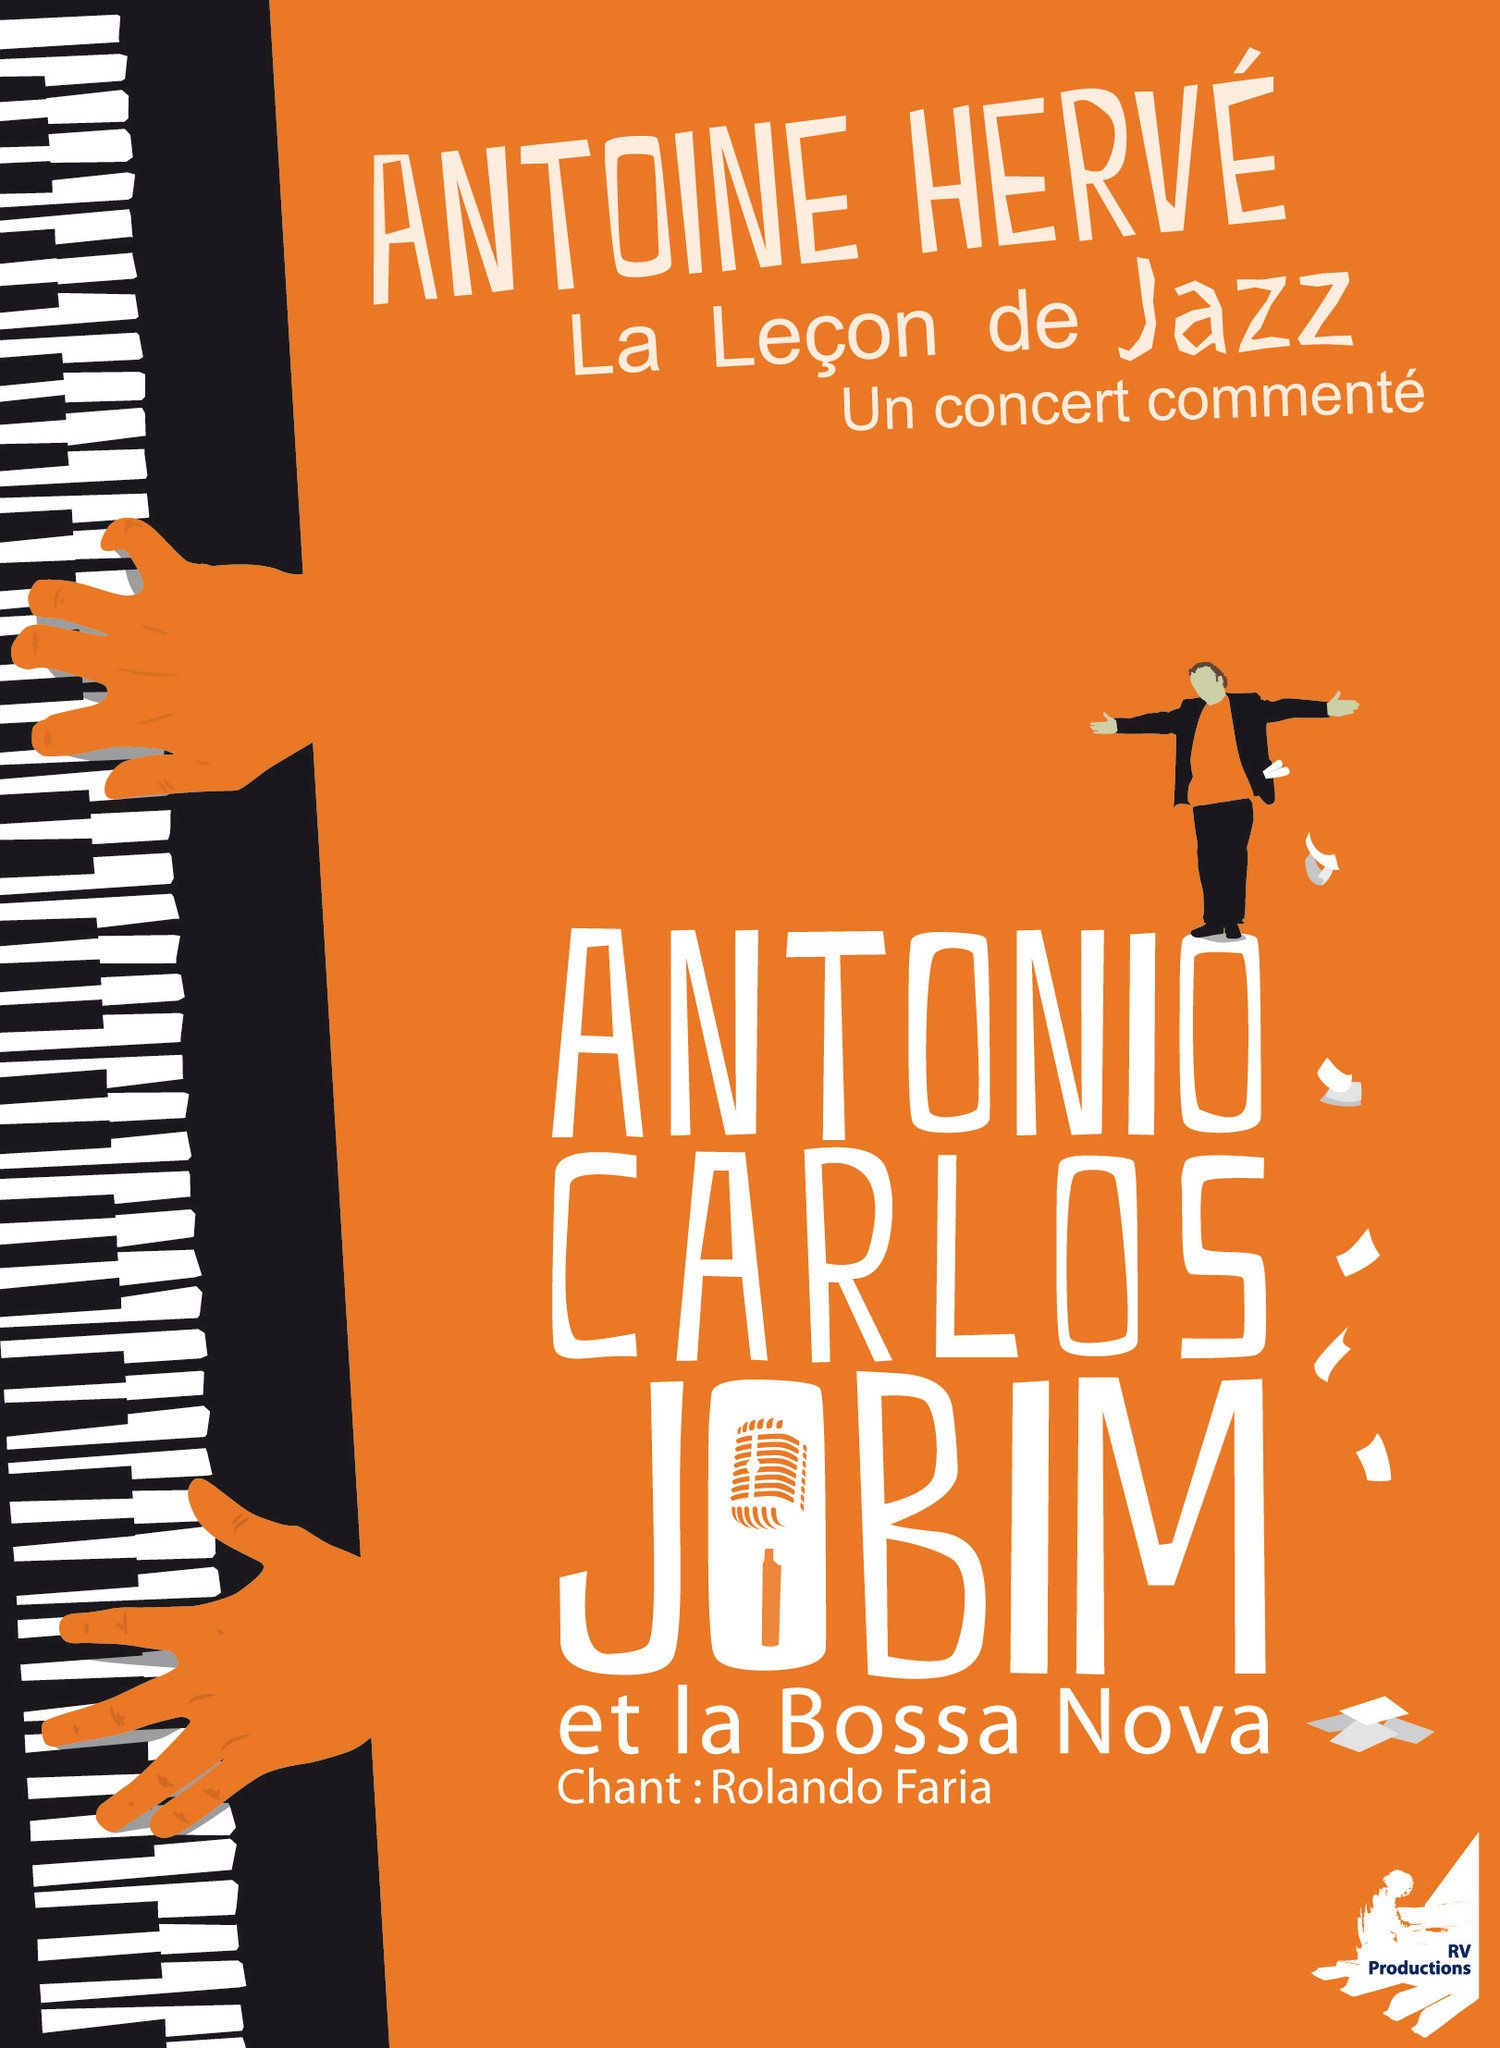 ANTOINE HERVÉ - Antoine Herve : La Lecon de Jazz (Antonio Carlos Jobim) cover 